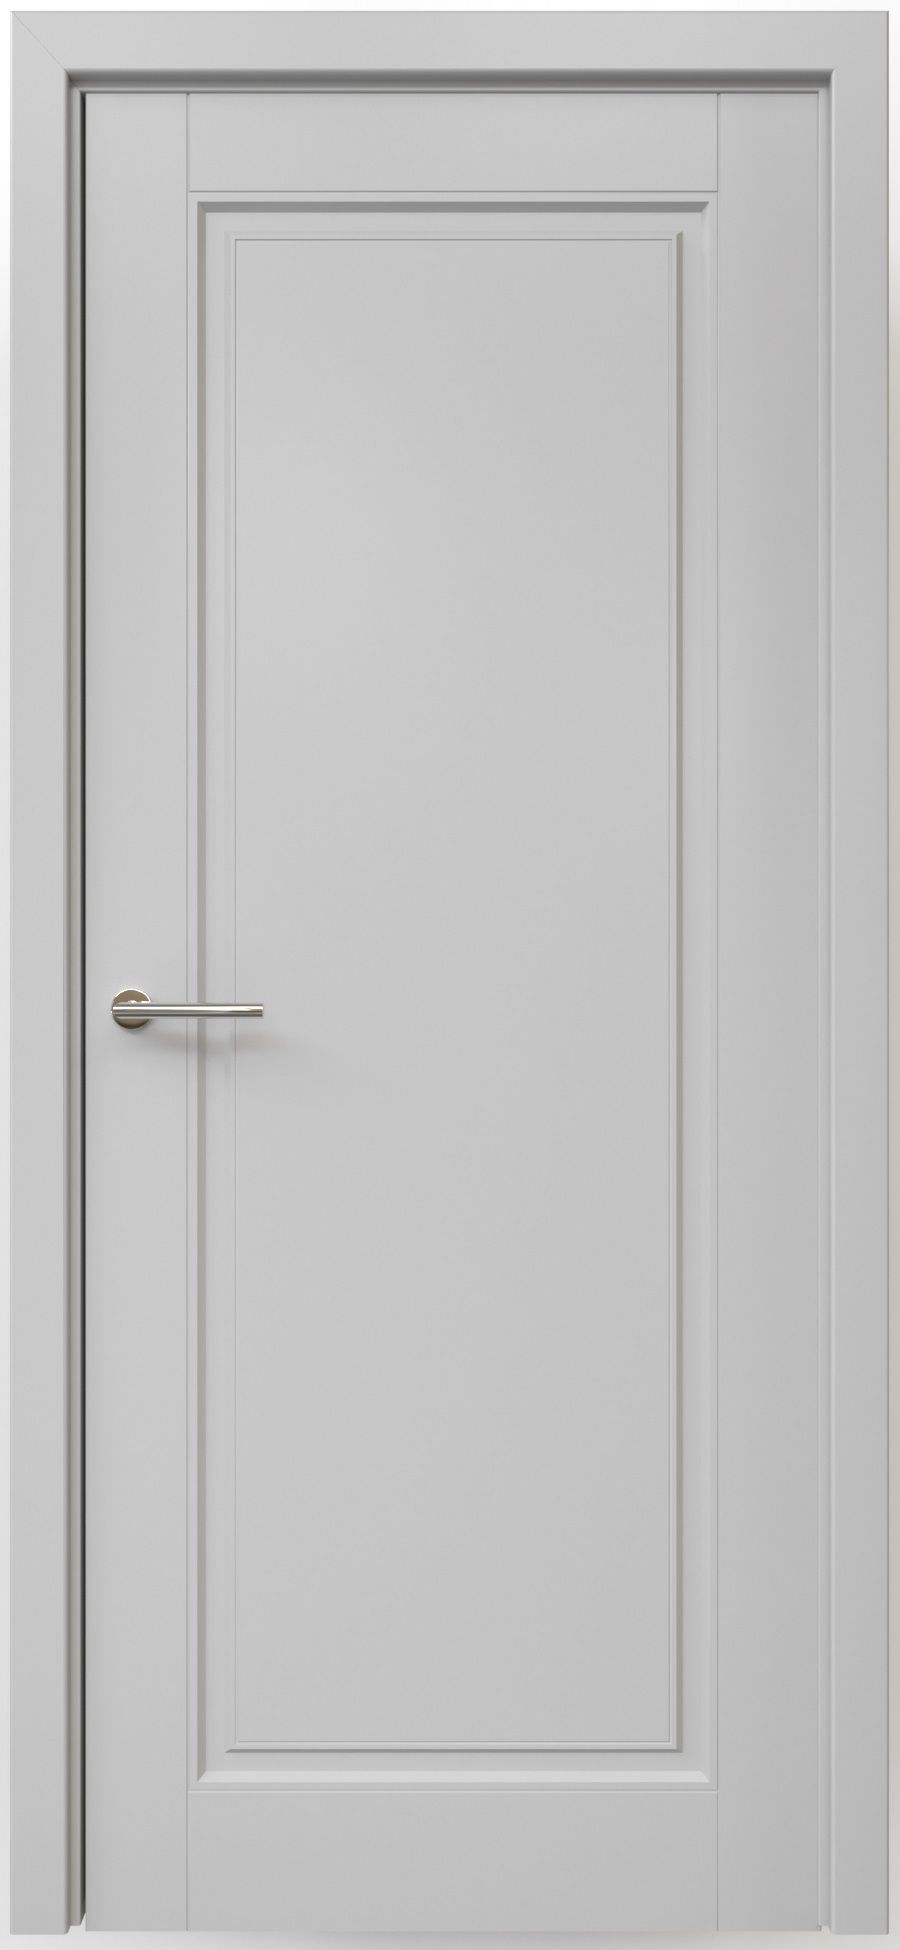 Полотно дверное глухое СХЕМА Эмаль-1 ПГ Эмаль Классика-1 900 серый (защелка маг.)